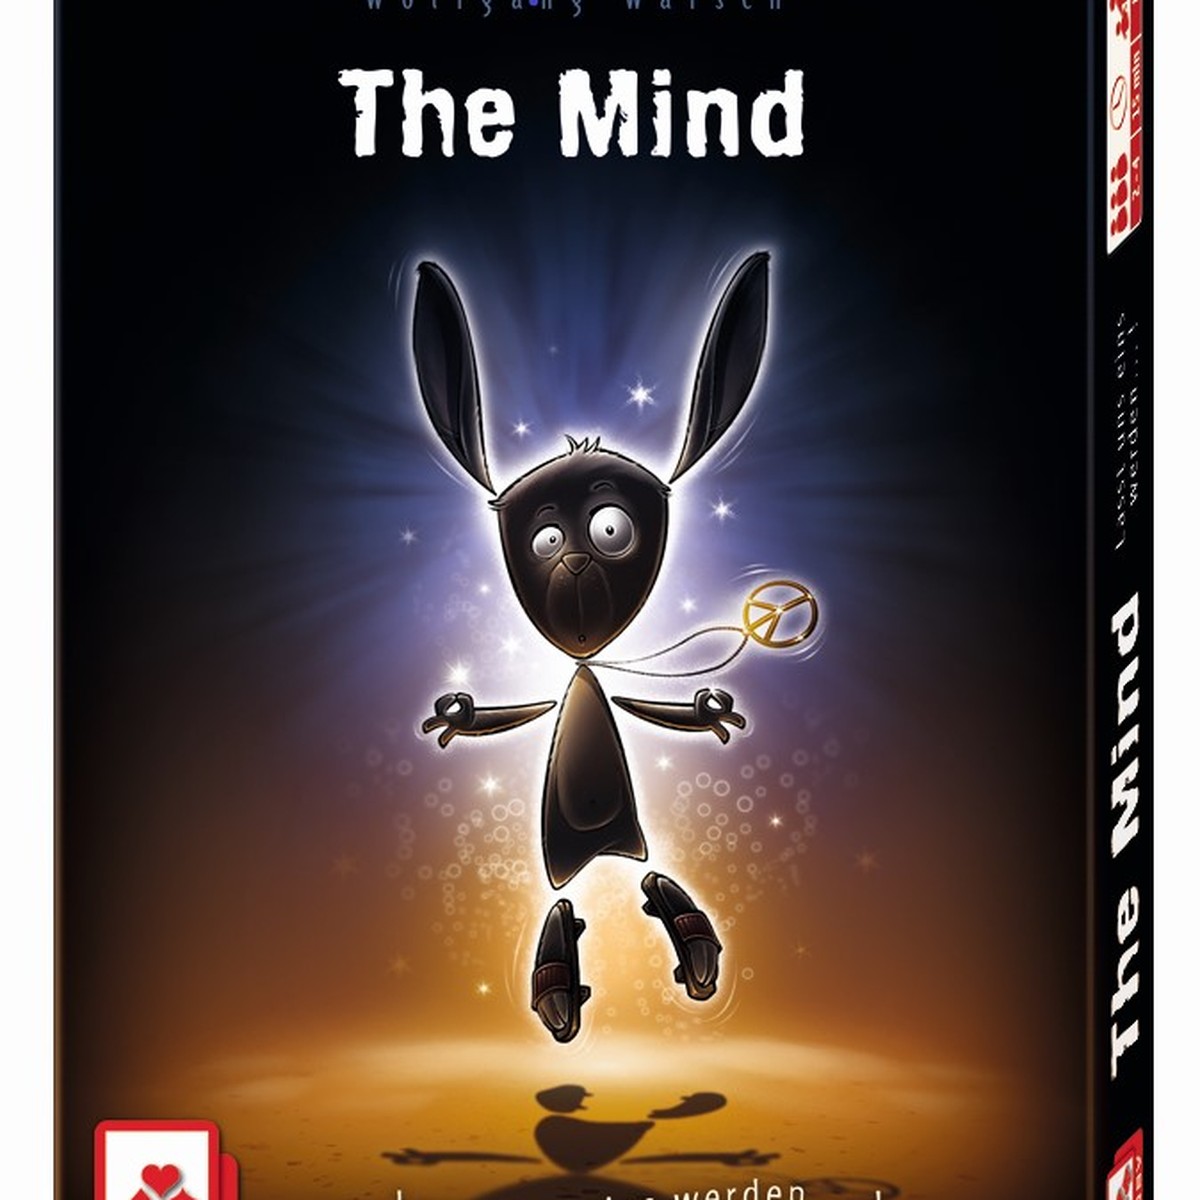 Spiele-Kritik von Tom Felber zu «The Mind»